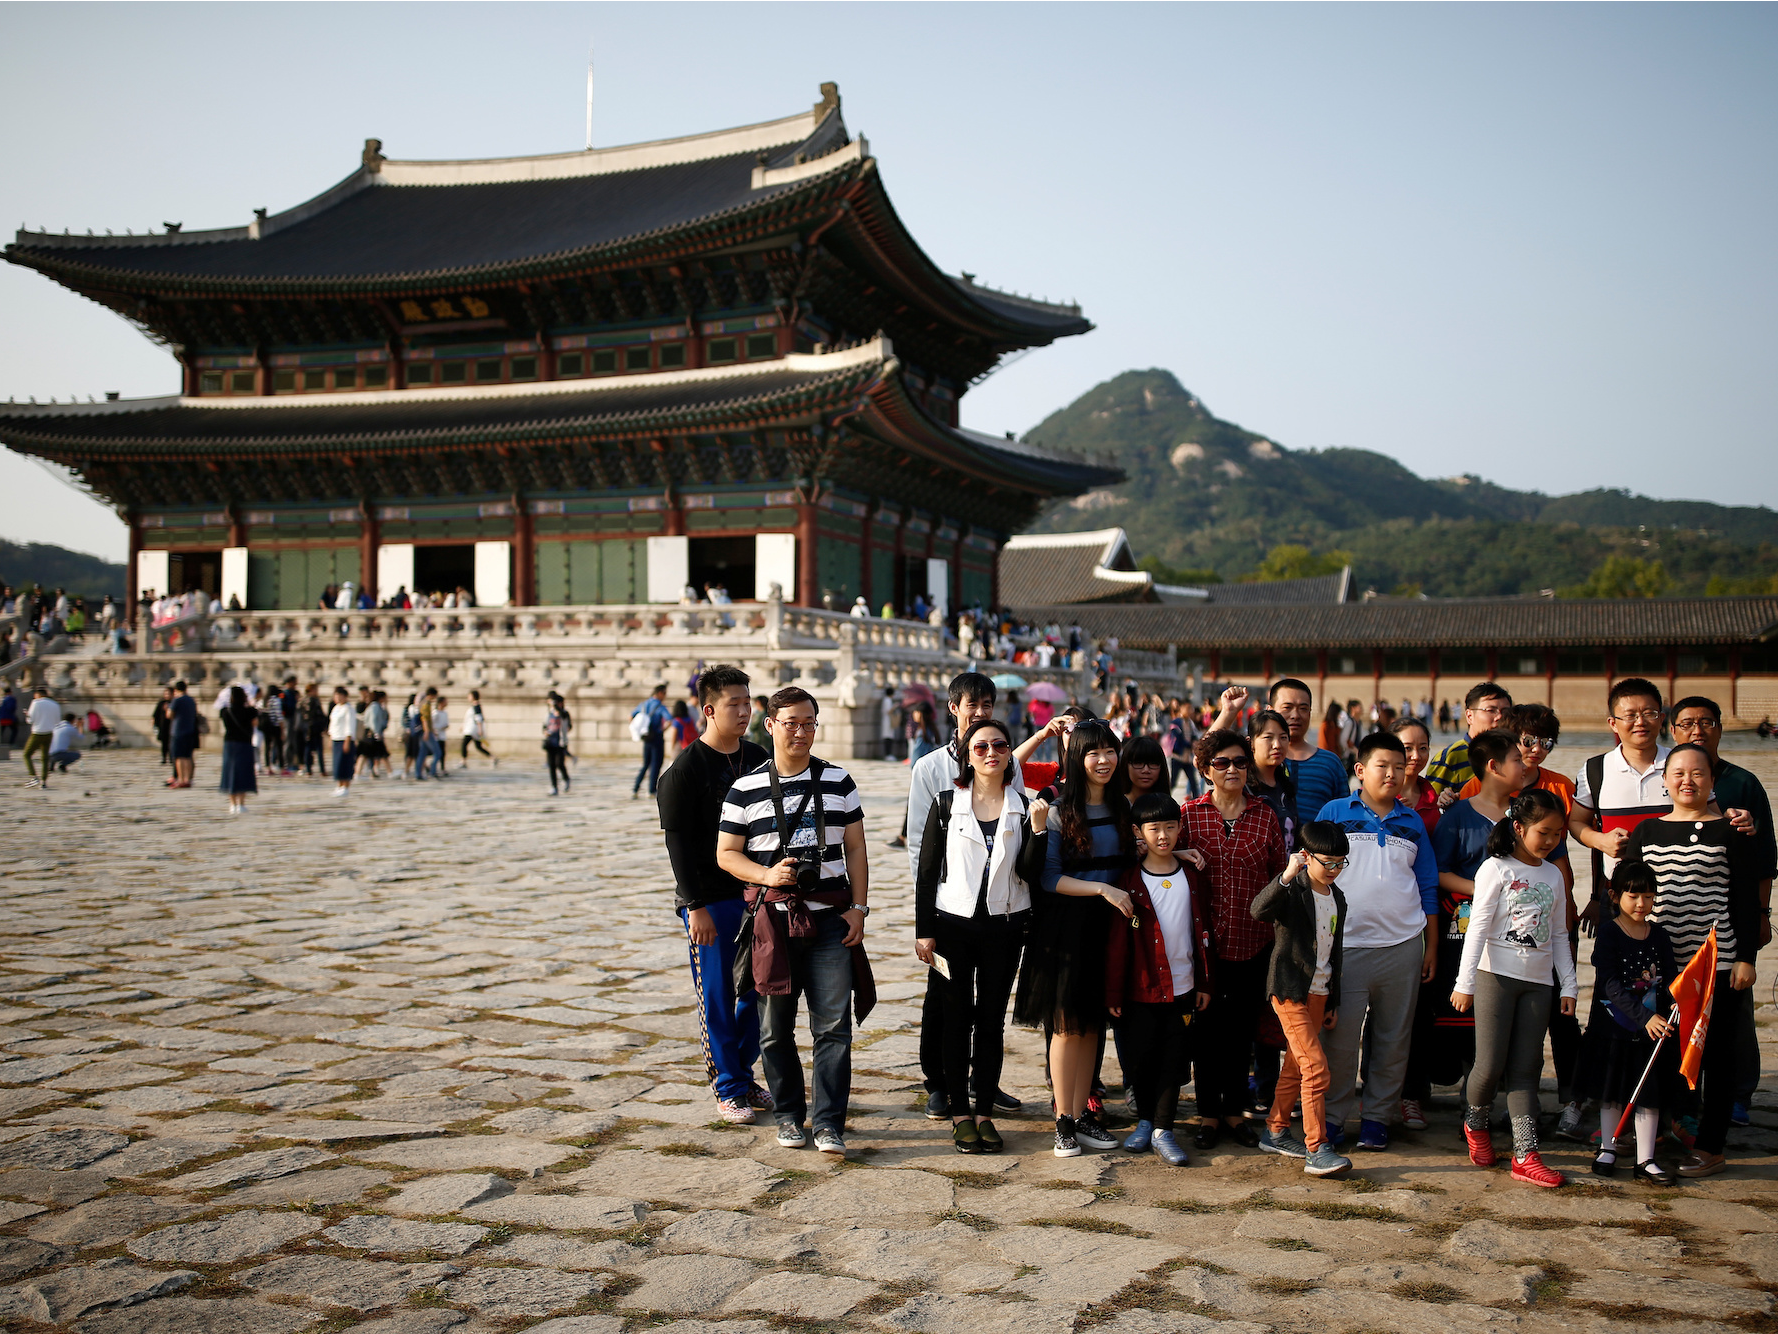 Cultural tourism. Южная Корея туристы. Южная Корея познавательный туризм. Республика Корея турист. Культурно-исторический туризм.